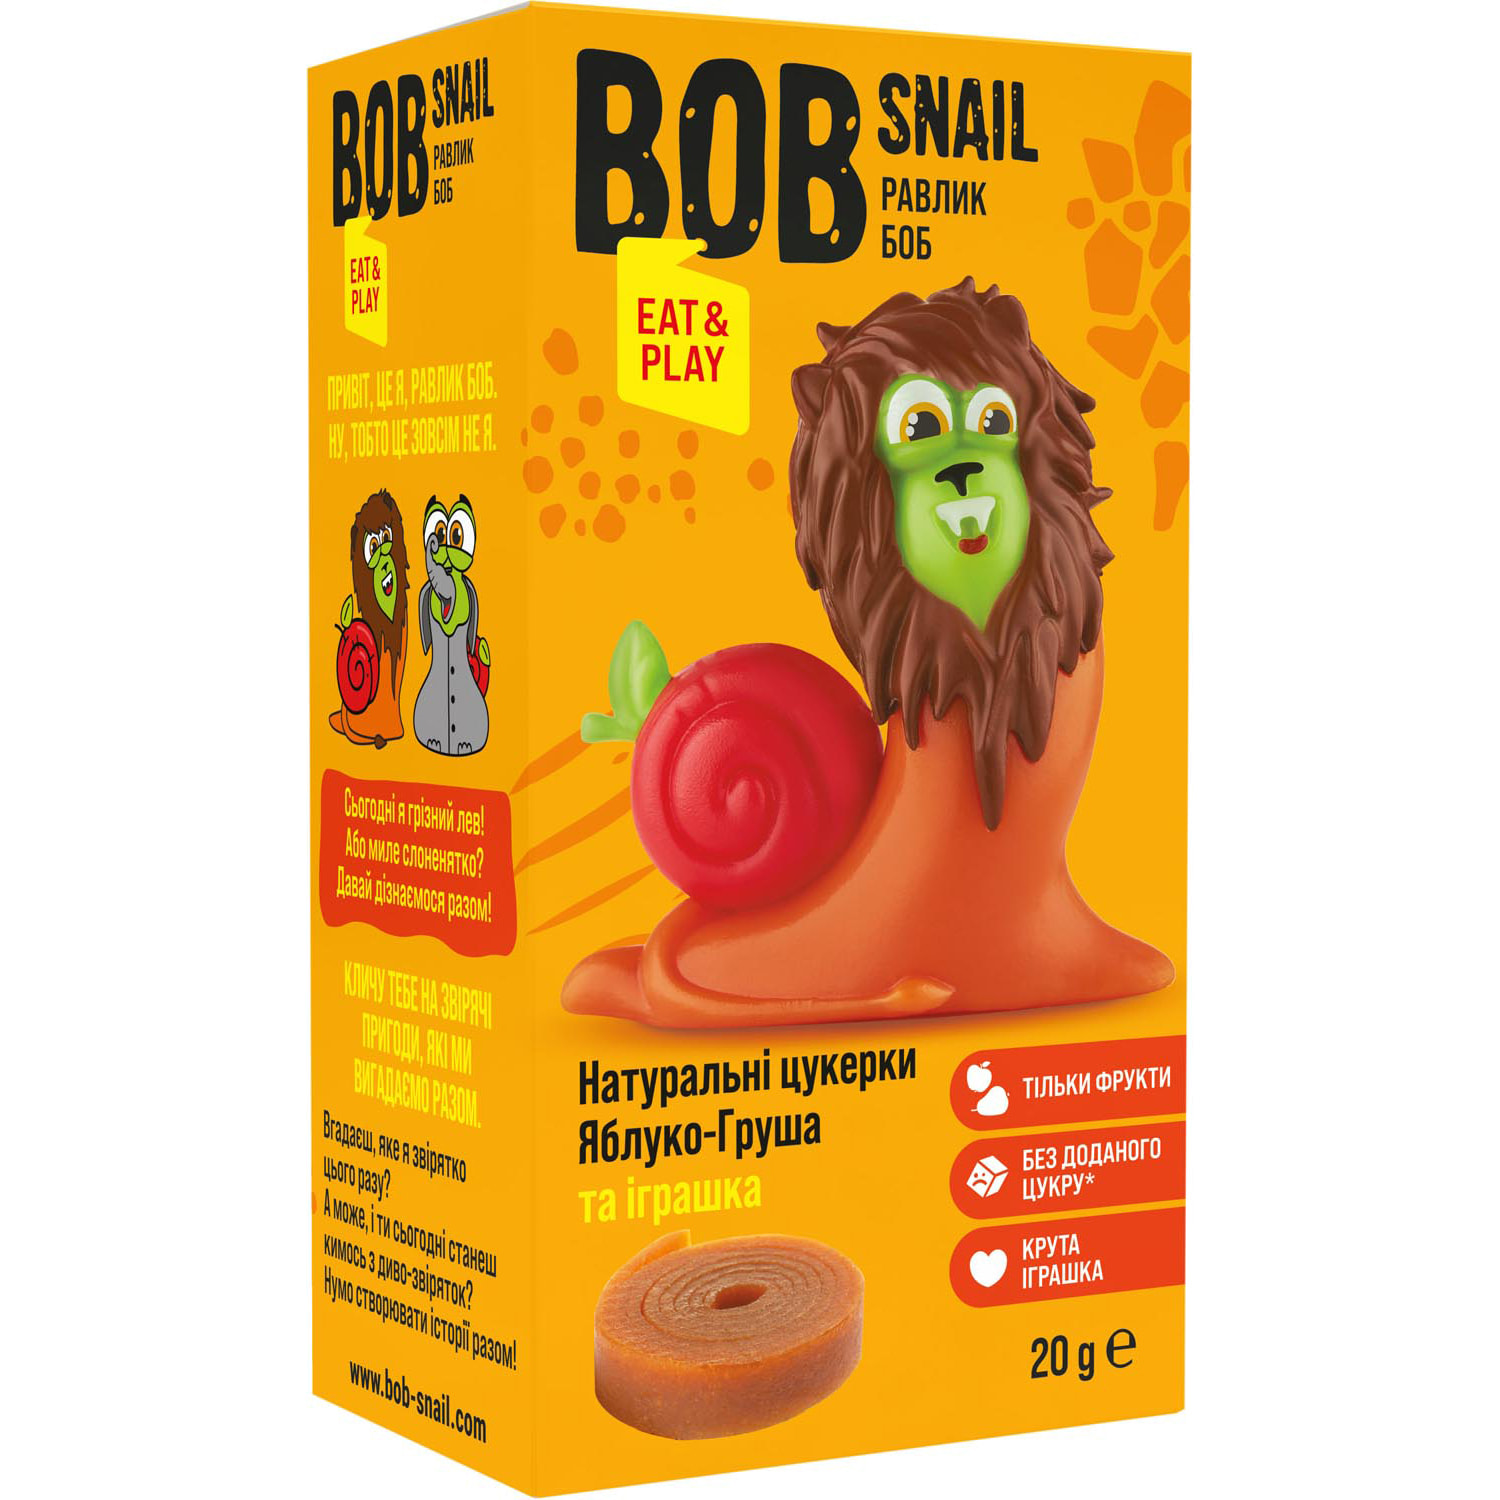 Натуральні цукерки Bob Snail Яблуко-Груша з іграшкою 160 г в асортименті (8 шт. по 20 г) - фото 4